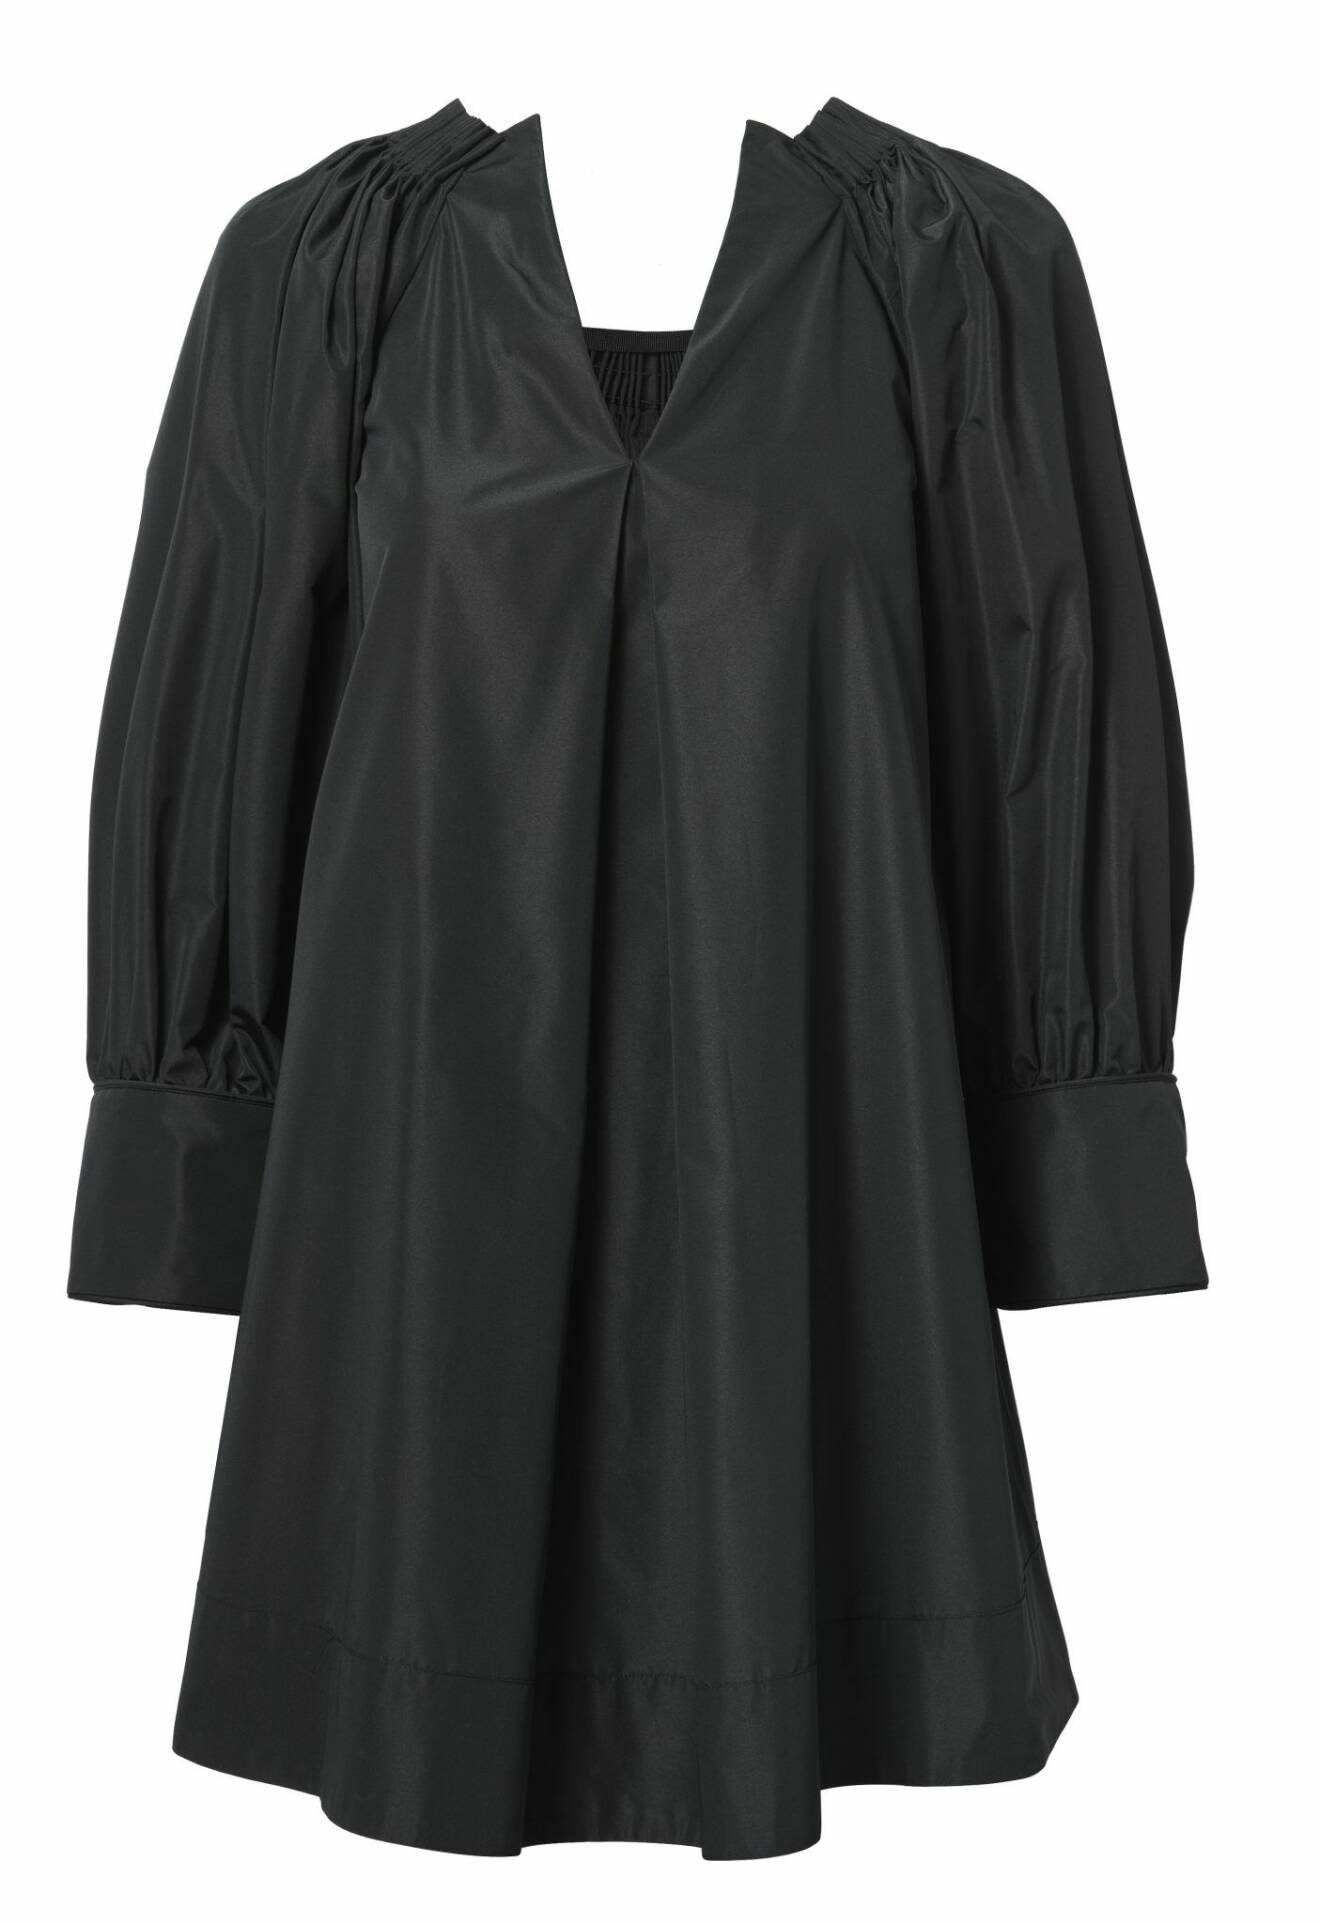 H&M Conscious Exclusive SS20 svart klänning